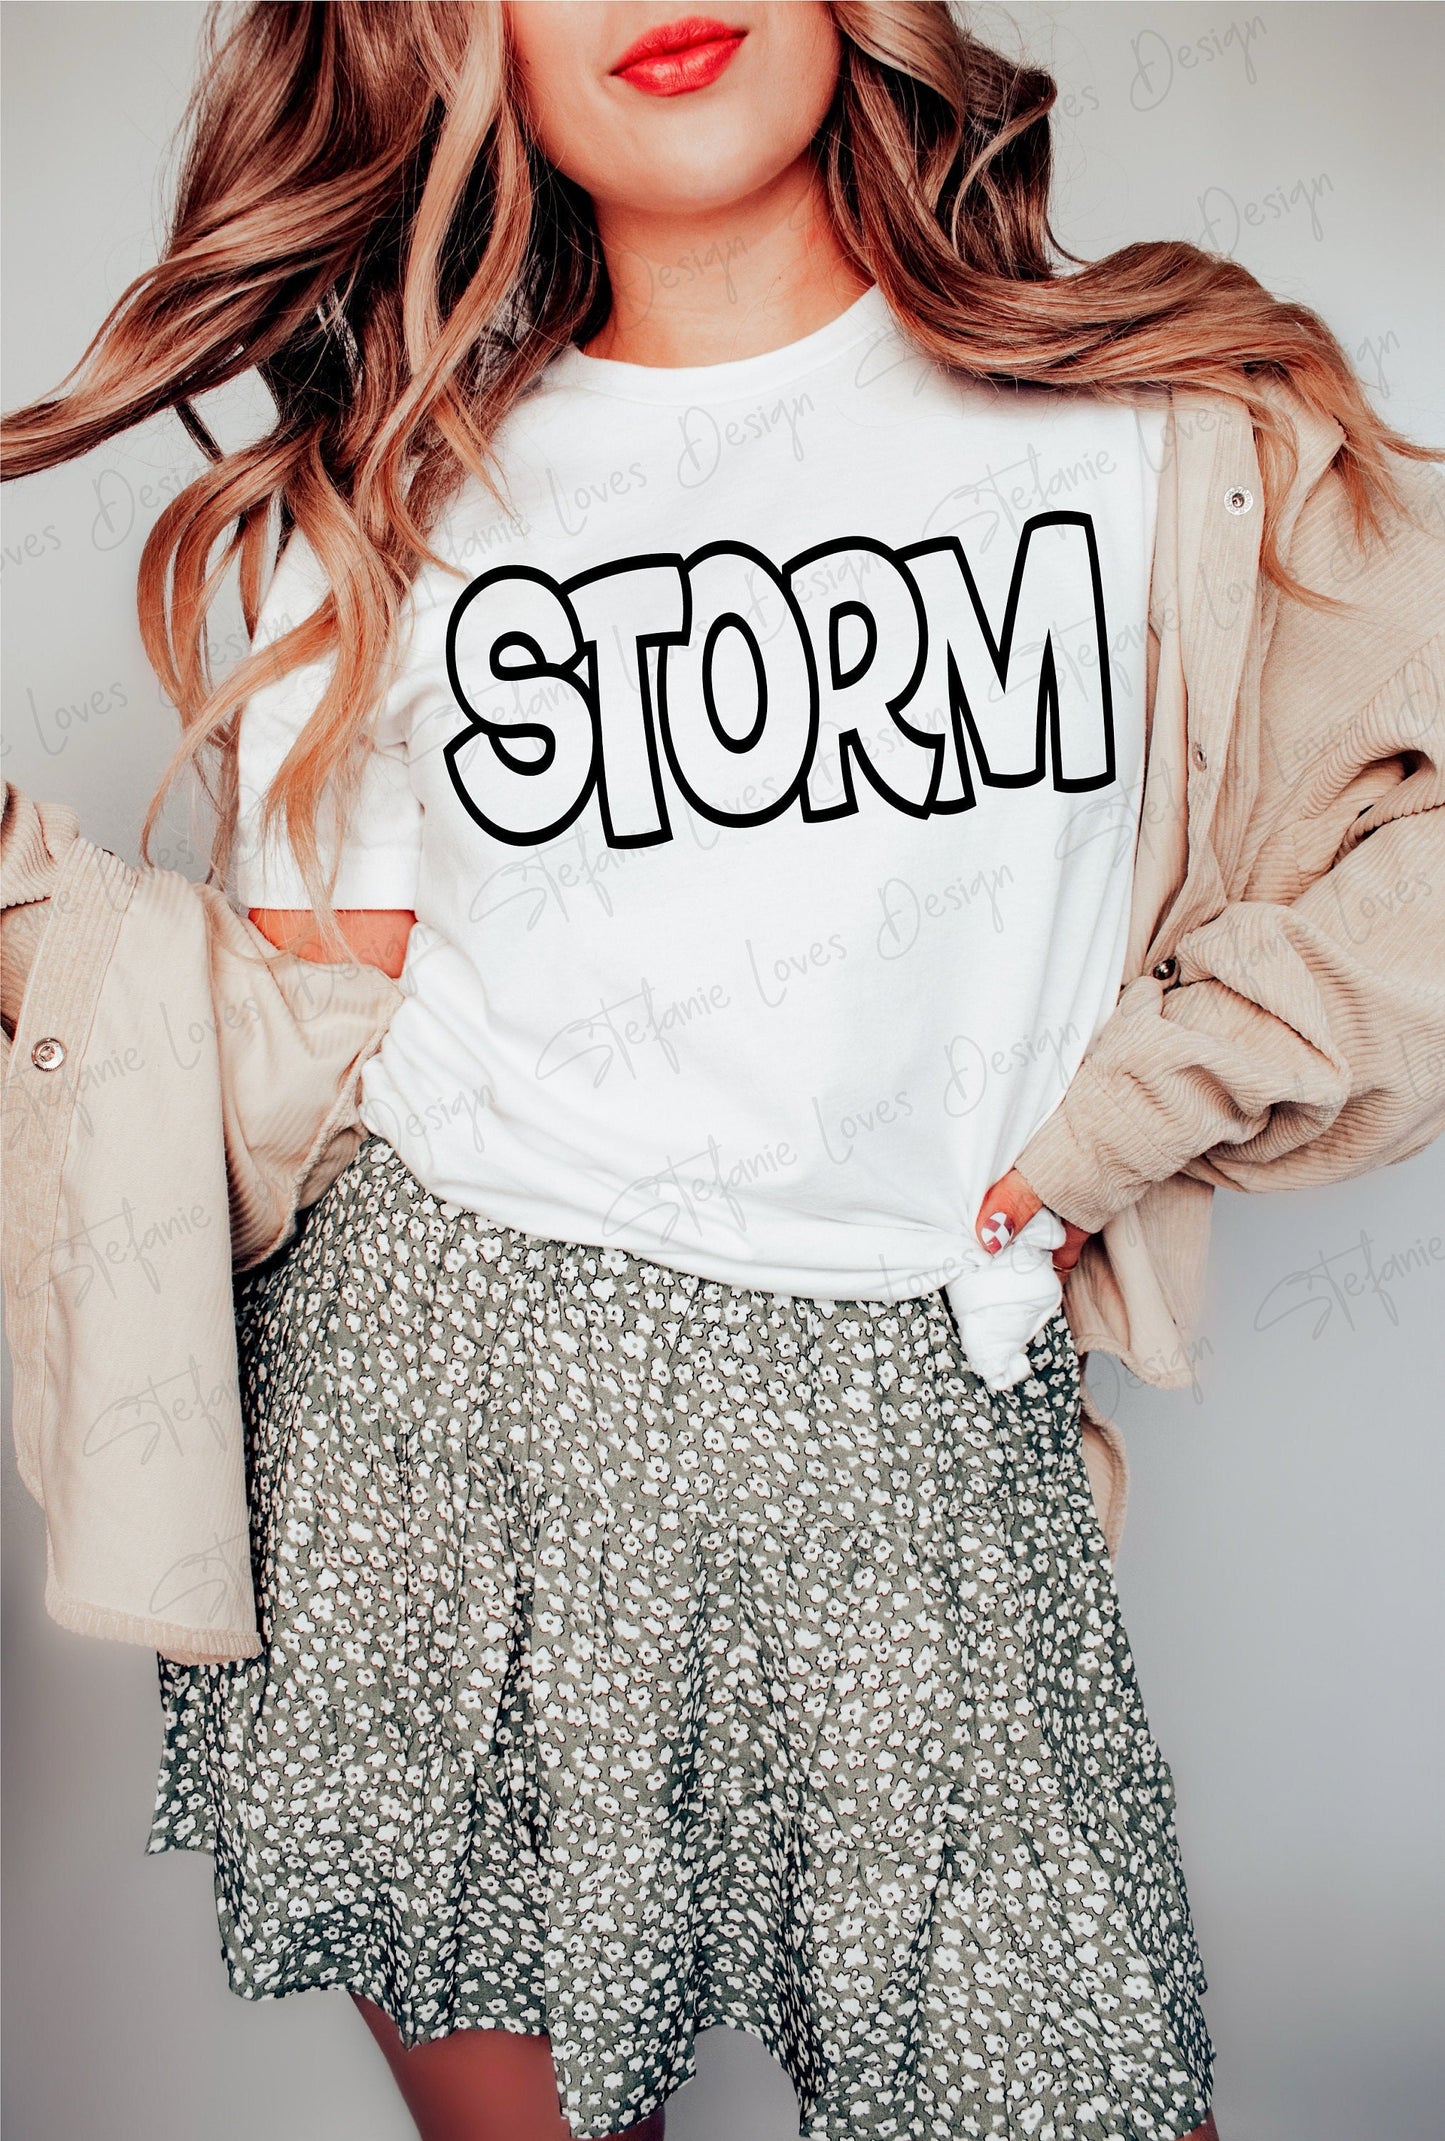 Storm svg, Storm Outline svg, Storm shirt svg, Digital Design, Storm Mascot